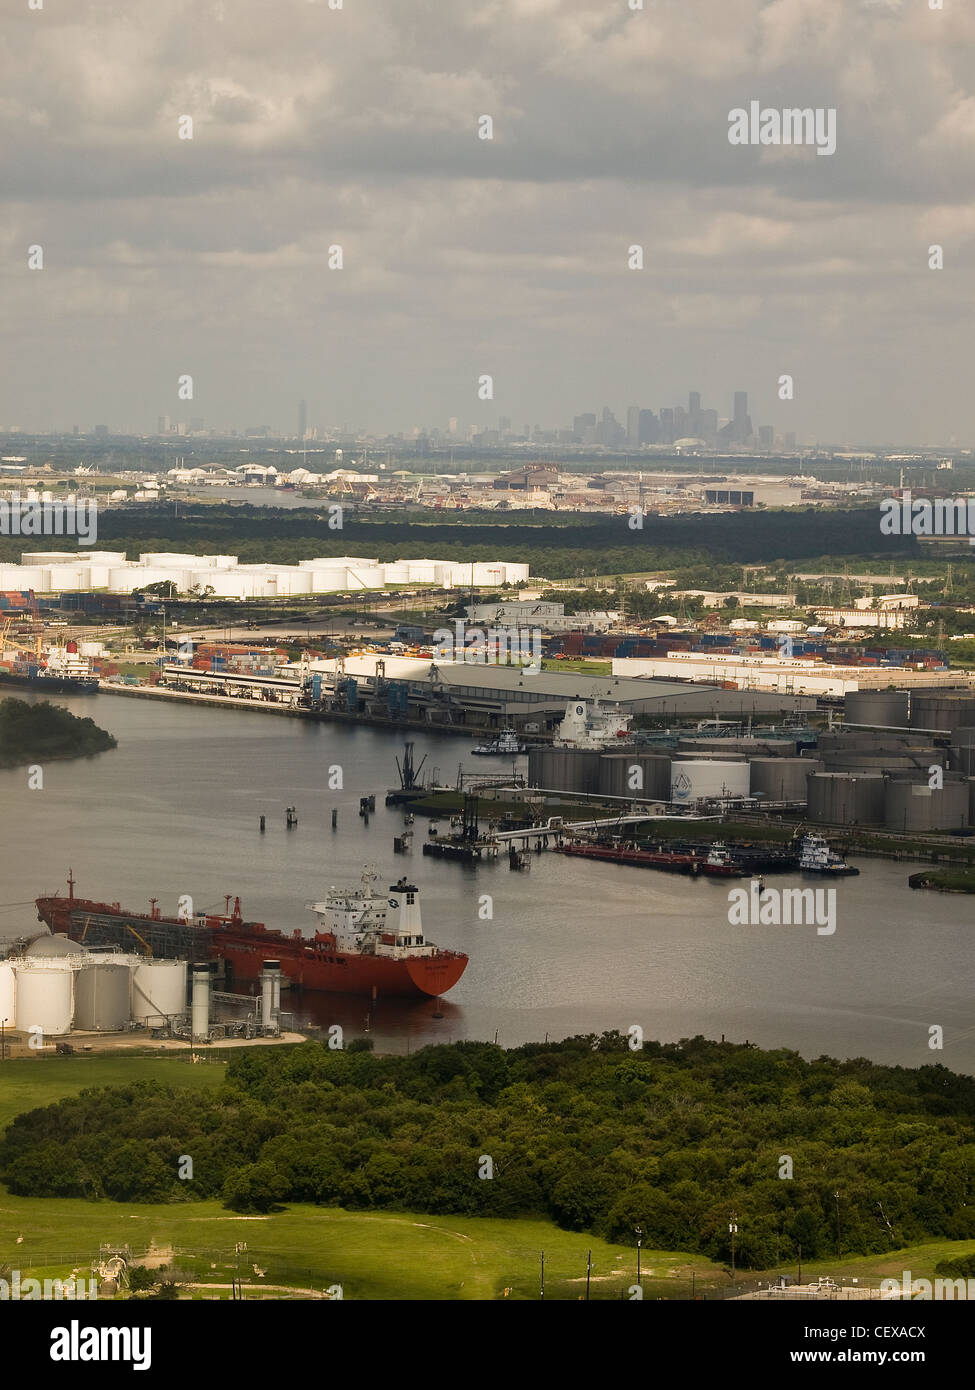 Camion-citerne de carburant dans la région de bayou le long de port de Houston avec Houston Skyline dans la distance. Vu de San Jacinto Battleground. Banque D'Images